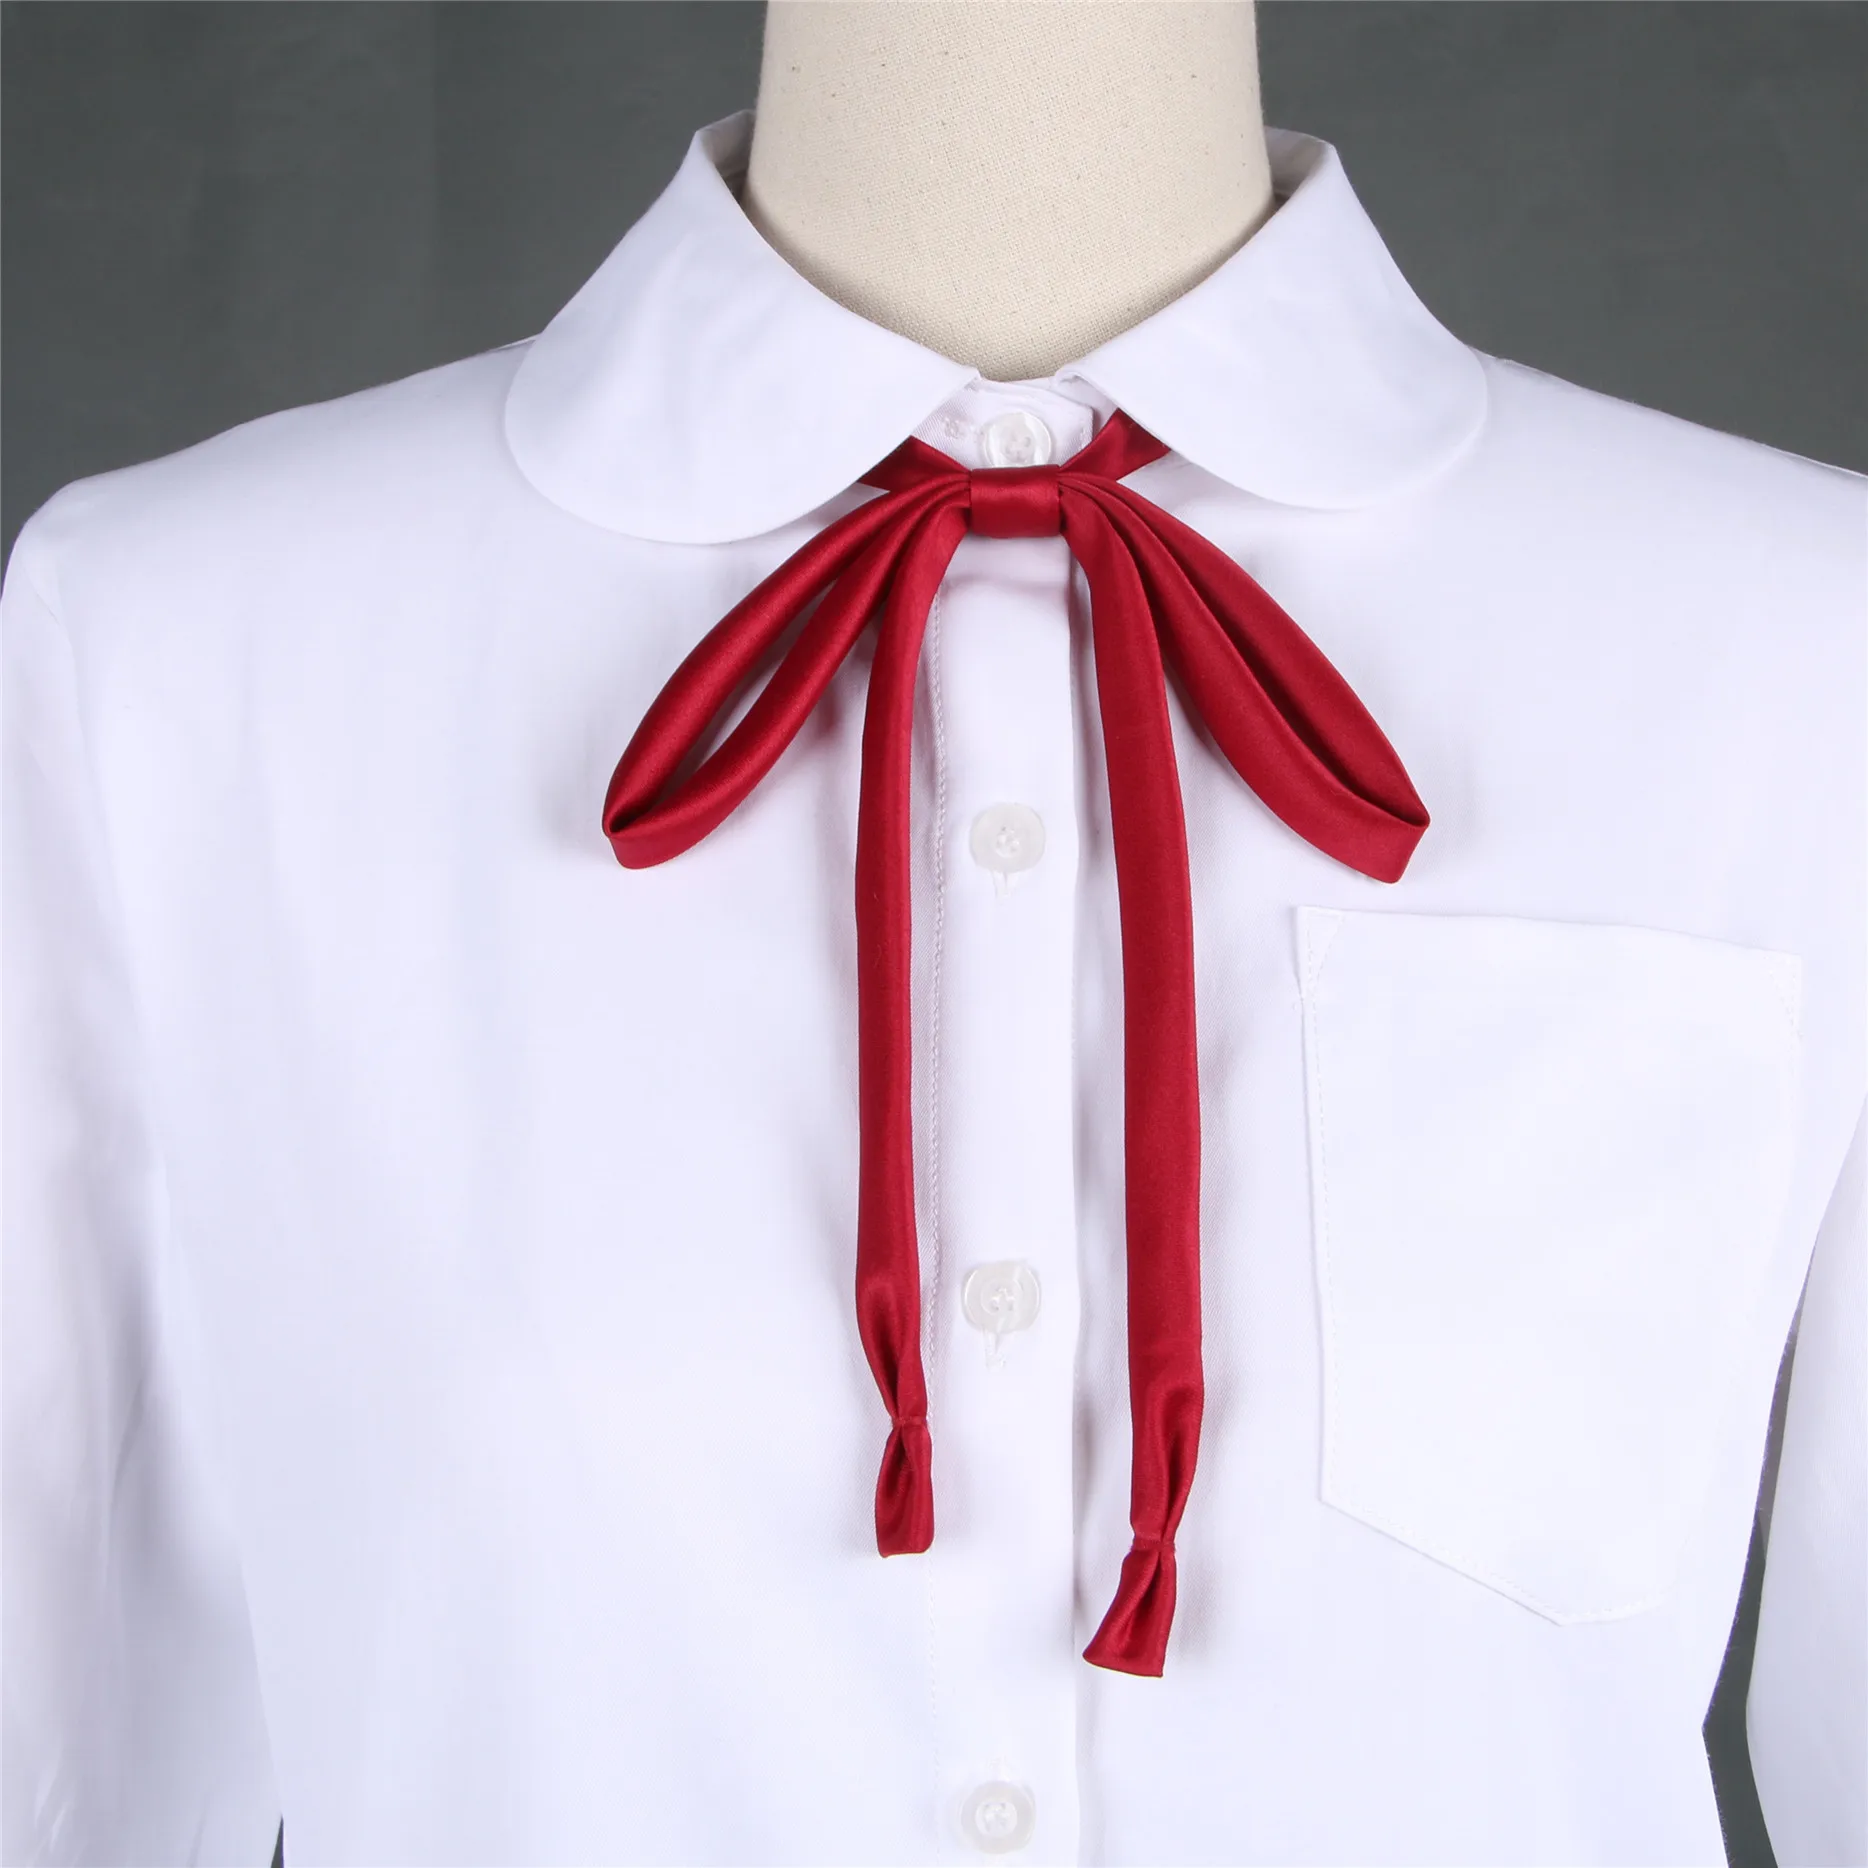 Школьная форма с длинным рукавом, белая рубашка для женщин, японская школьная форма для мальчиков и девочек, XS-5XL большого размера, JK